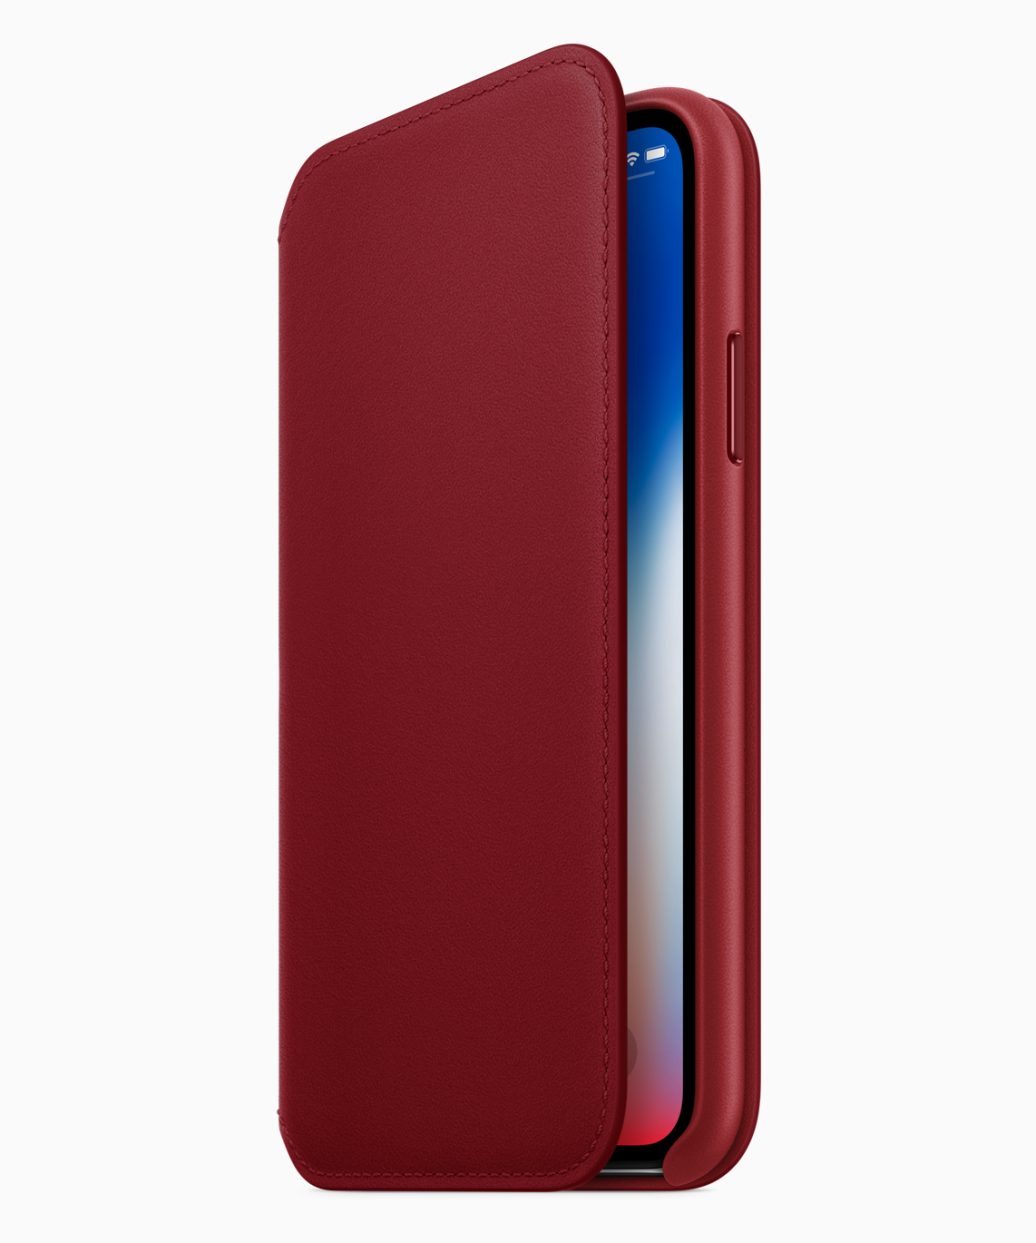 Apple chính thức ra
mắt iPhone 8/8 Plus phiên bản màu đỏ mặt trước màu đen đẹp
hơn, giá không đổi